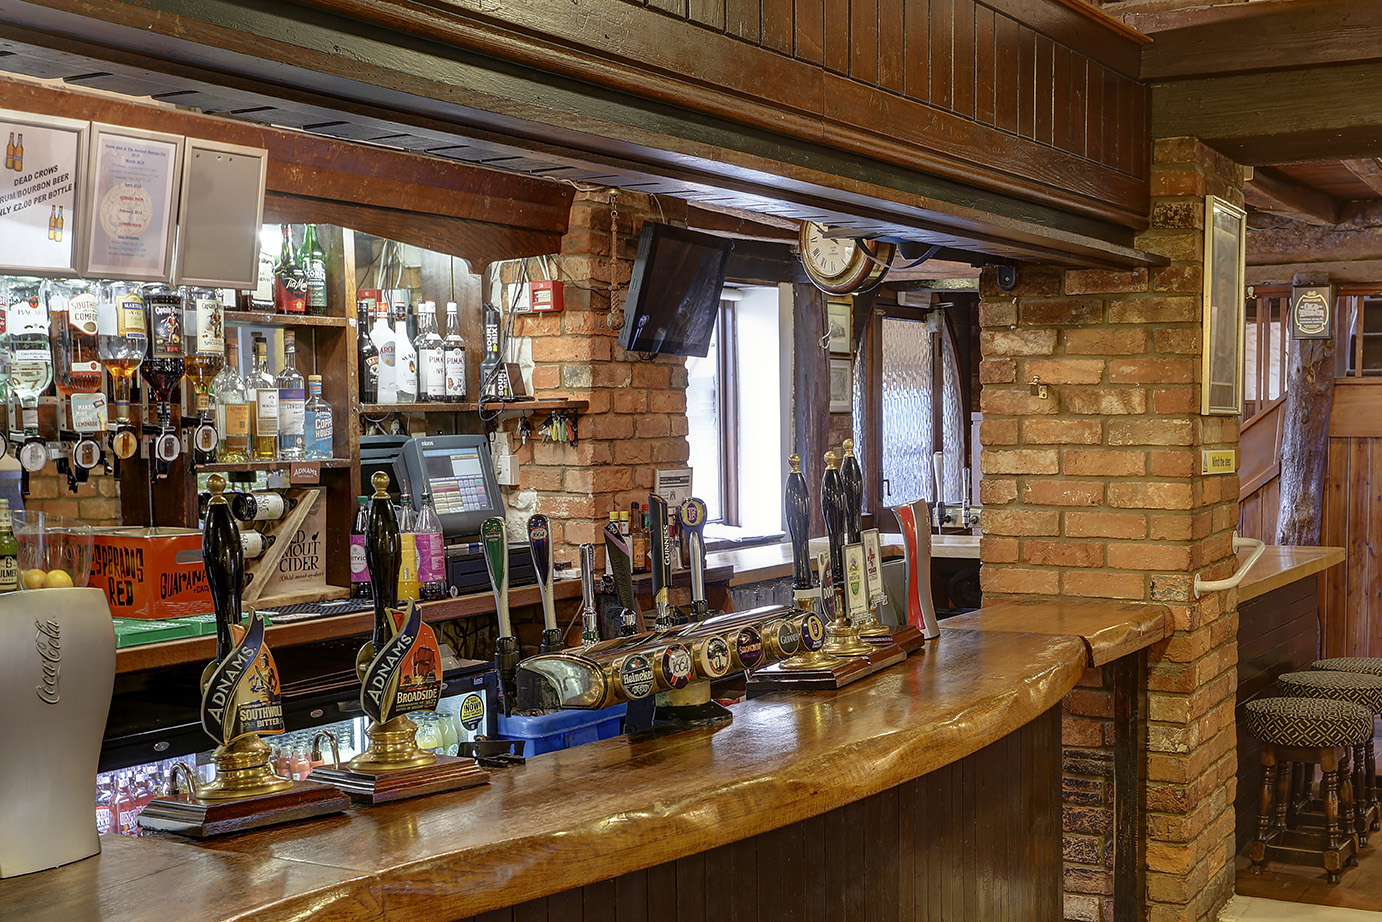 The Mariner pub and bar